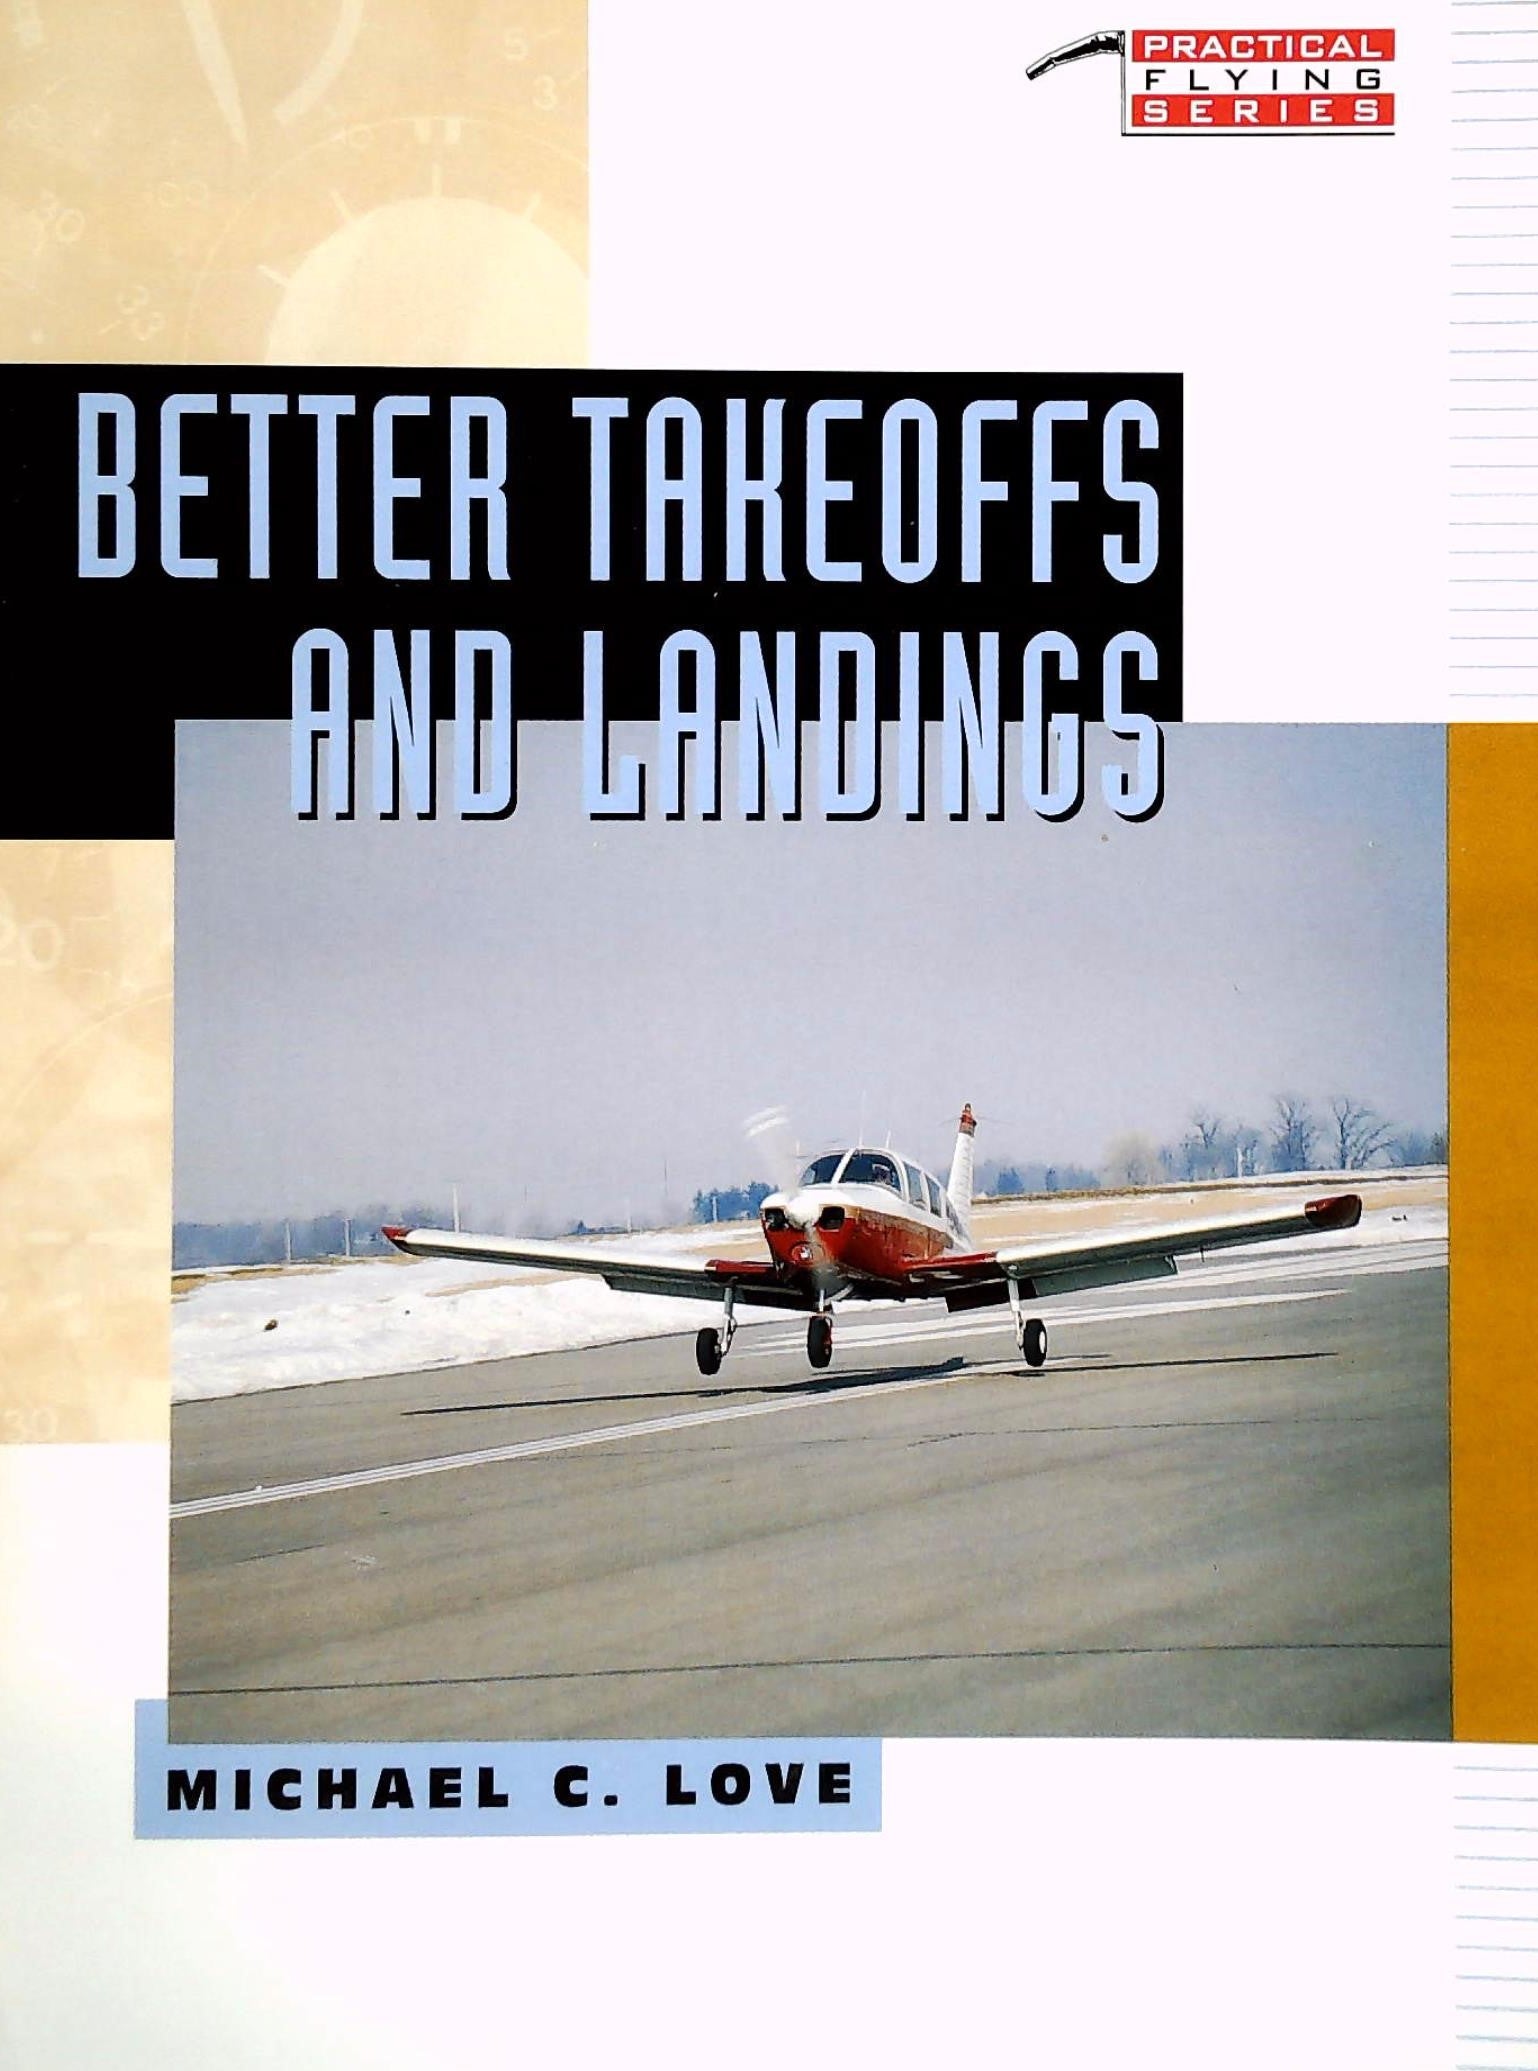 Livre ISBN 0070388067 Detter Takeoffs and Landings (Michael C. Love)